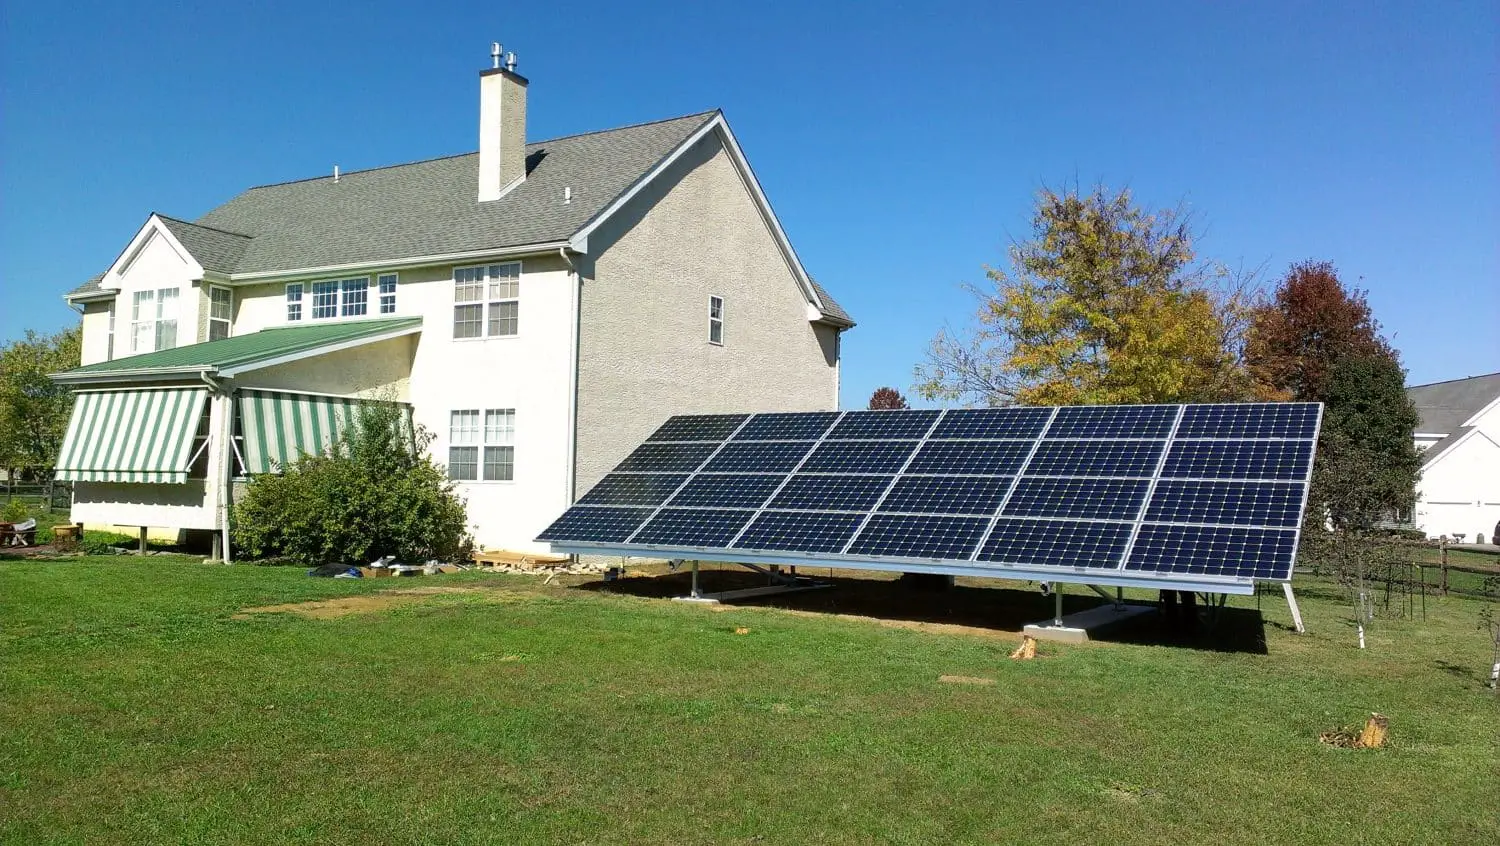 How Long Can A House Run On Solar Power Alone